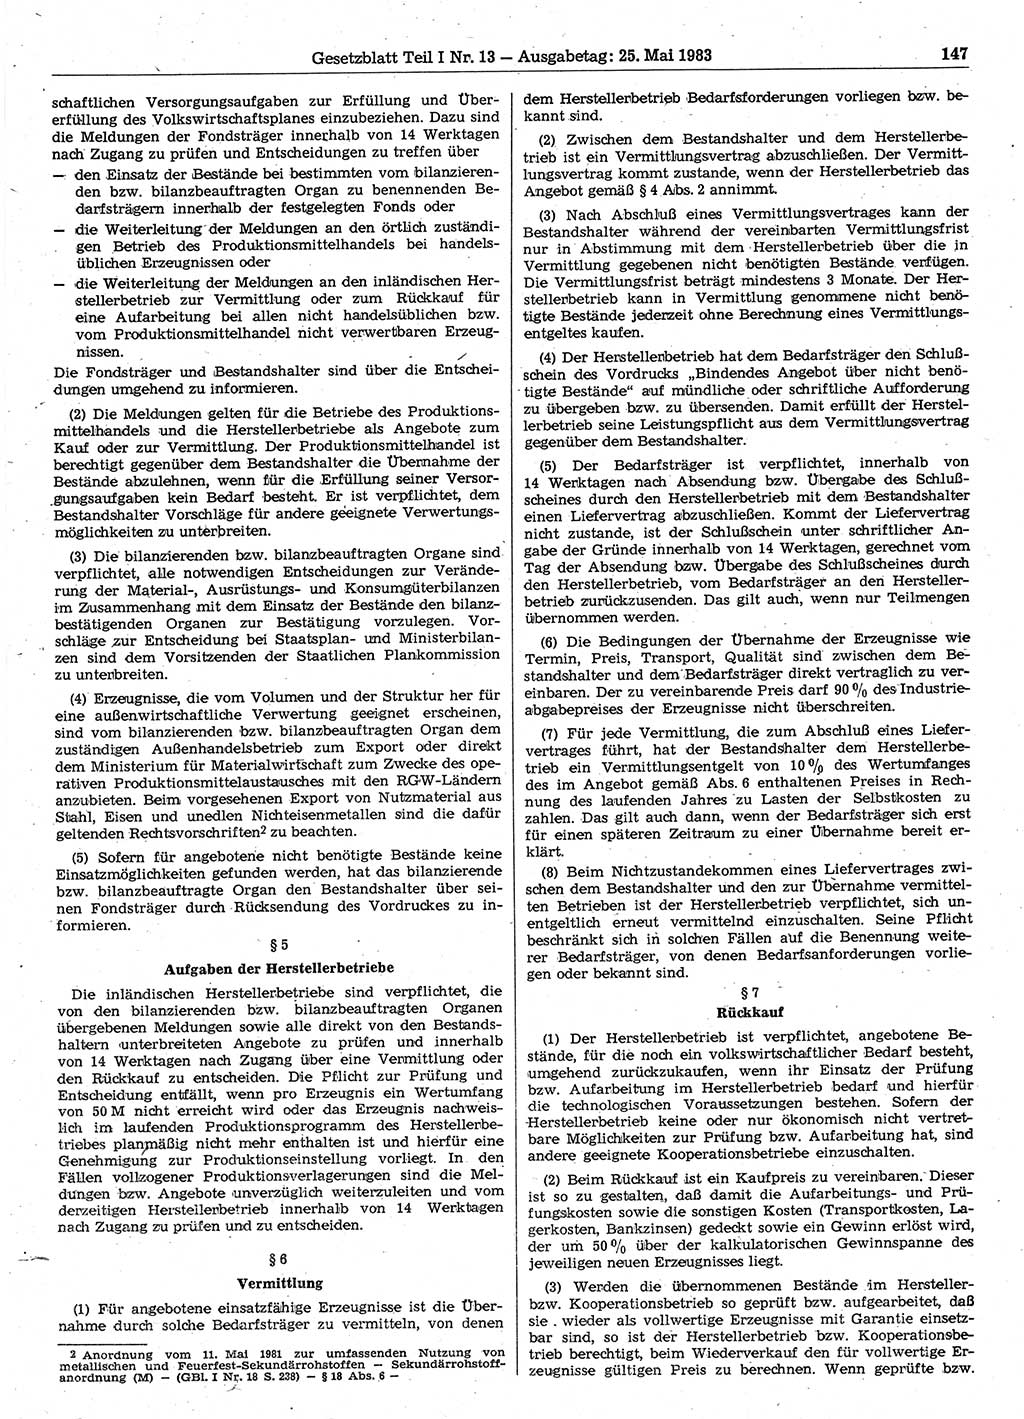 Gesetzblatt (GBl.) der Deutschen Demokratischen Republik (DDR) Teil Ⅰ 1983, Seite 147 (GBl. DDR Ⅰ 1983, S. 147)